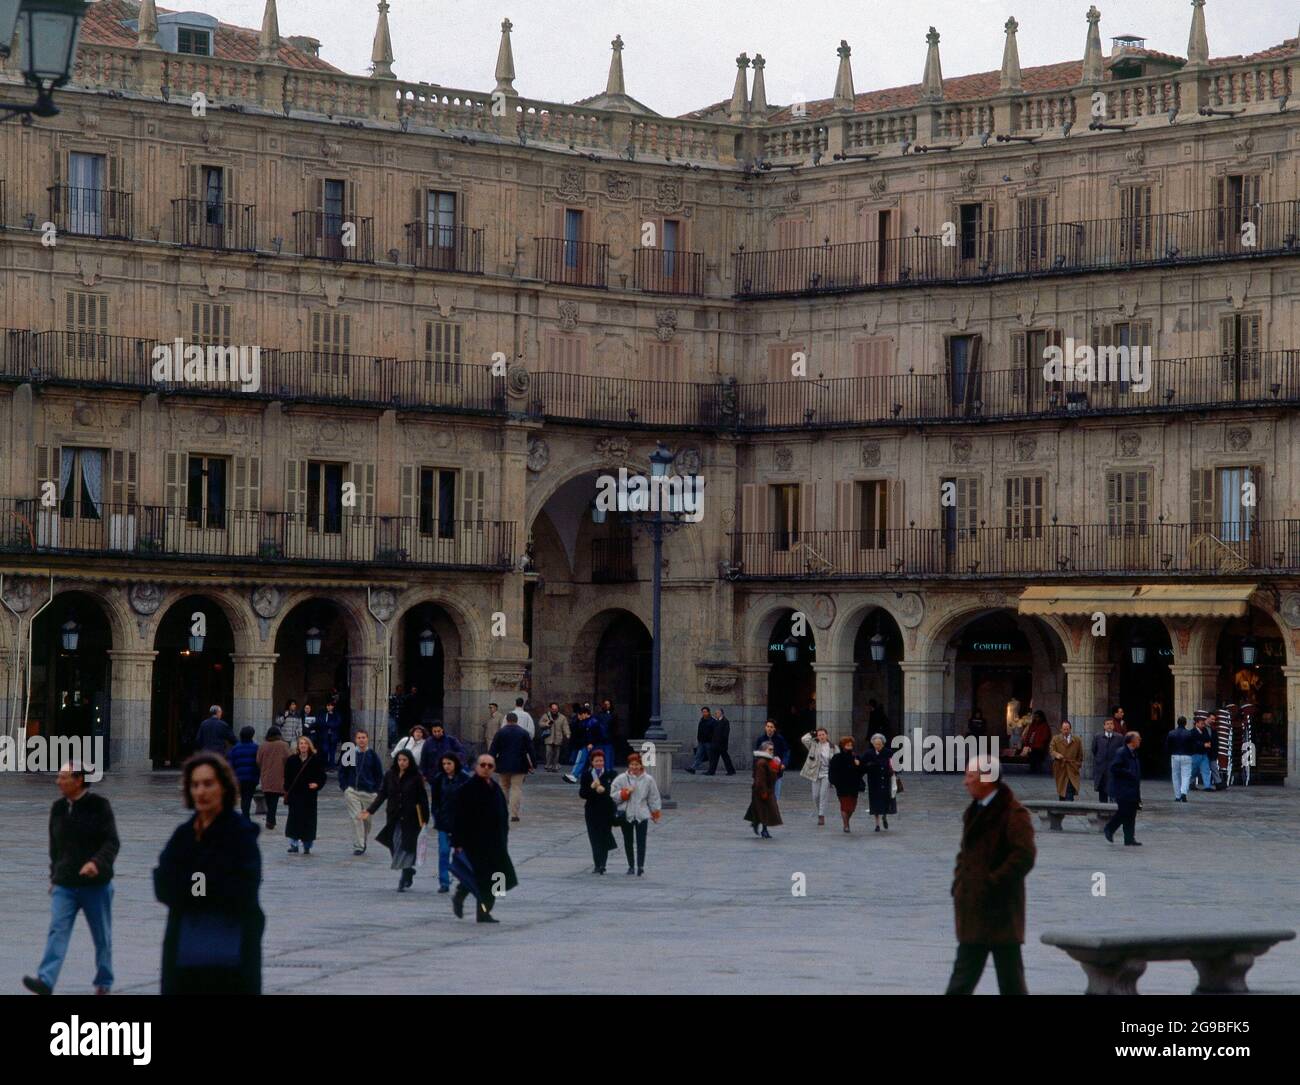 ARCO DE ACCESO A LA PLAZA MAYOR - FOTO AÑOS 90. Location: HALLMARKT. SALAMANCA. SPAIN. Stock Photo